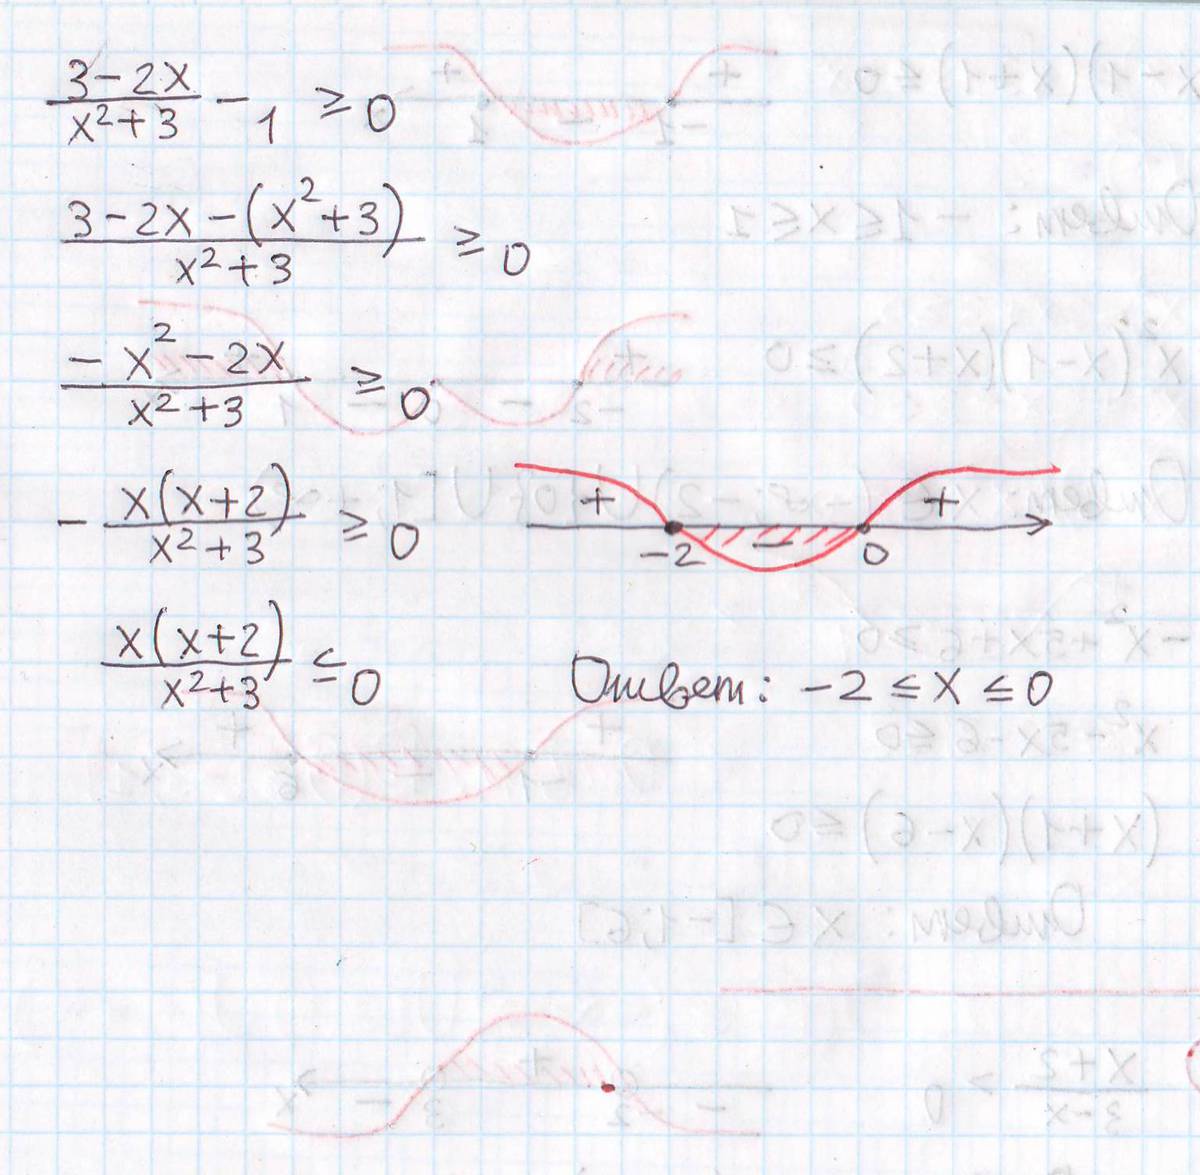 5x 2 45x 0. -X^2-3x+1=0. (1-X^3)^2(X^2-5x)=<0. X^3-X^2-X+1=0. 0.2 X^2 - 1.6 X + 3.2 = 0 2 = 0.